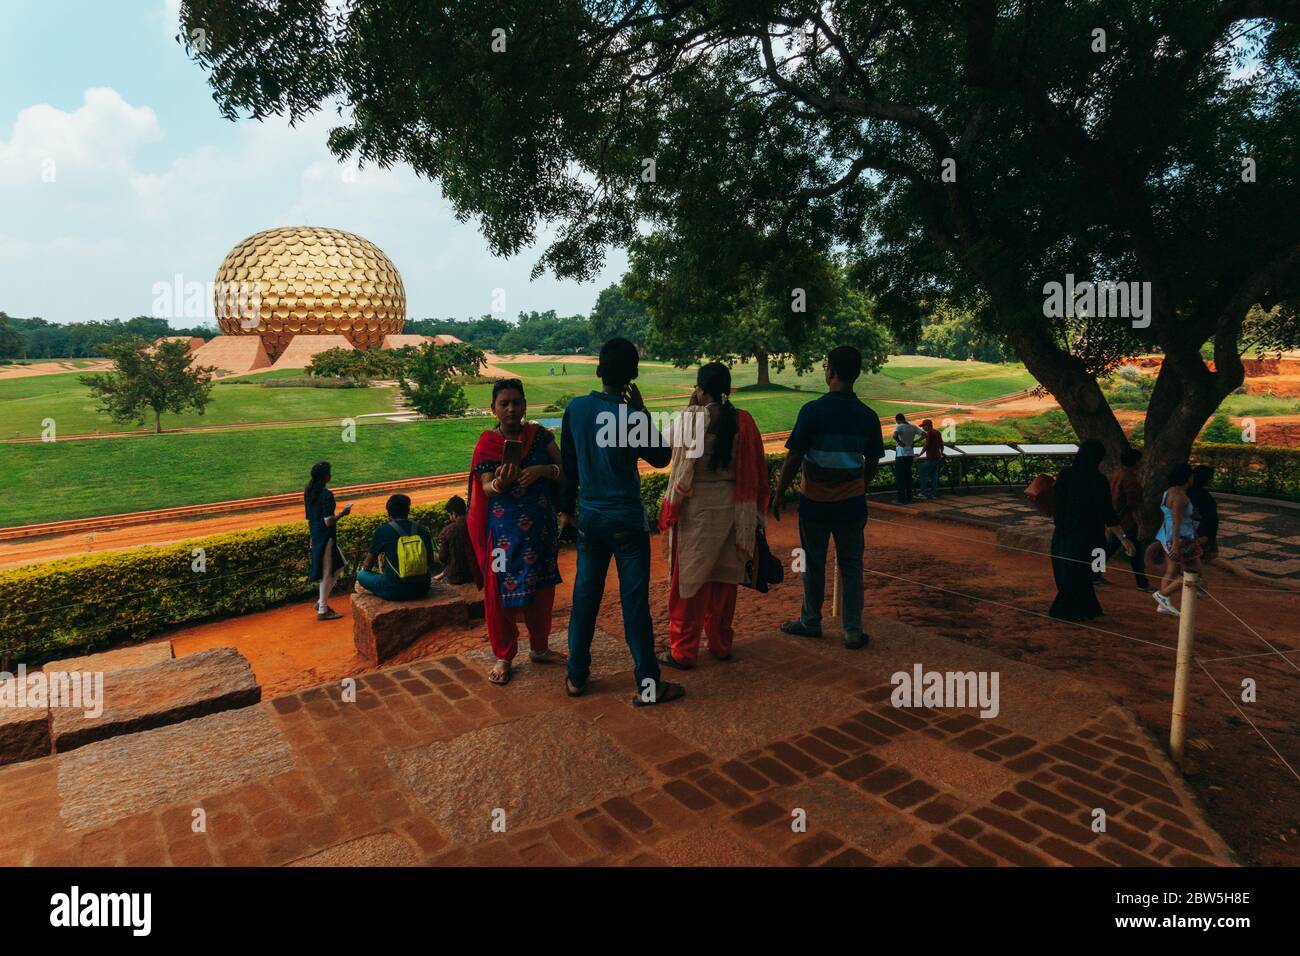 Indische Touristen vor Matrimandir, einer goldenen Kugelstruktur, die für die Meditation in der experimentellen Township Auroville, Indien, gebaut wurde Stockfoto